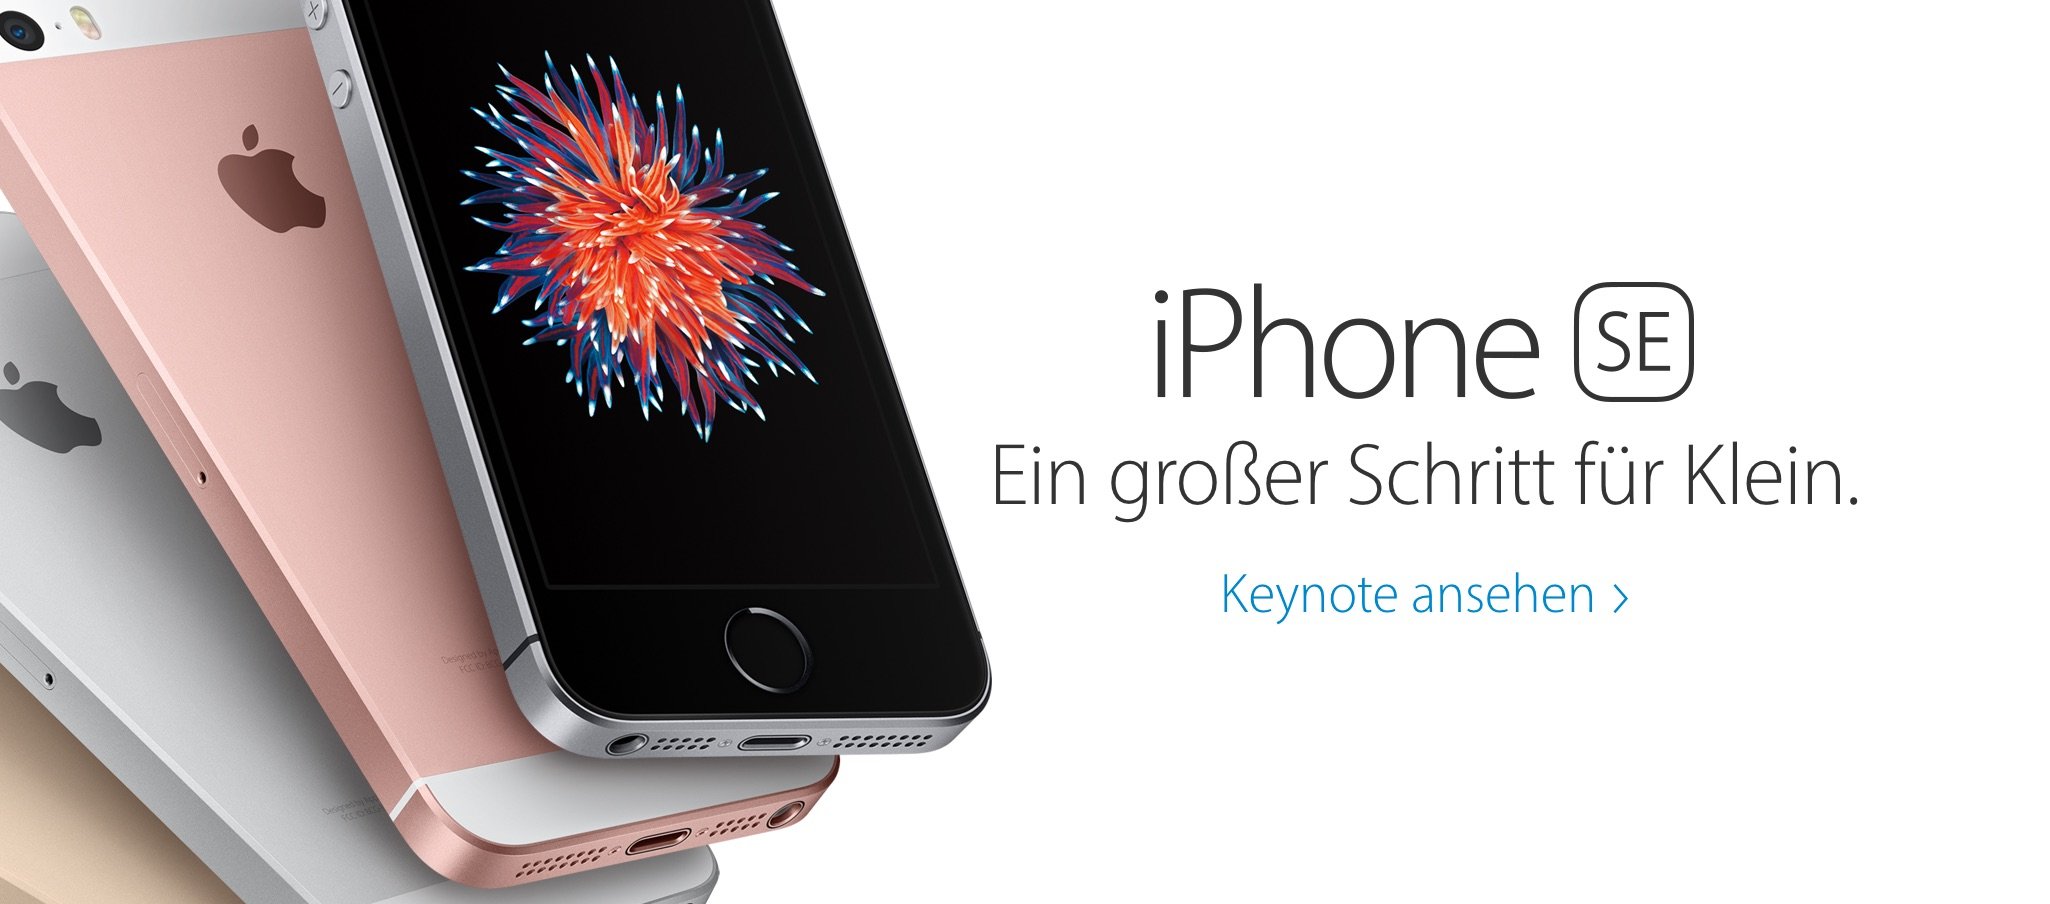 Euro Preise Deutschland für iPhone SE, iPad Pro, Apple Watch 4